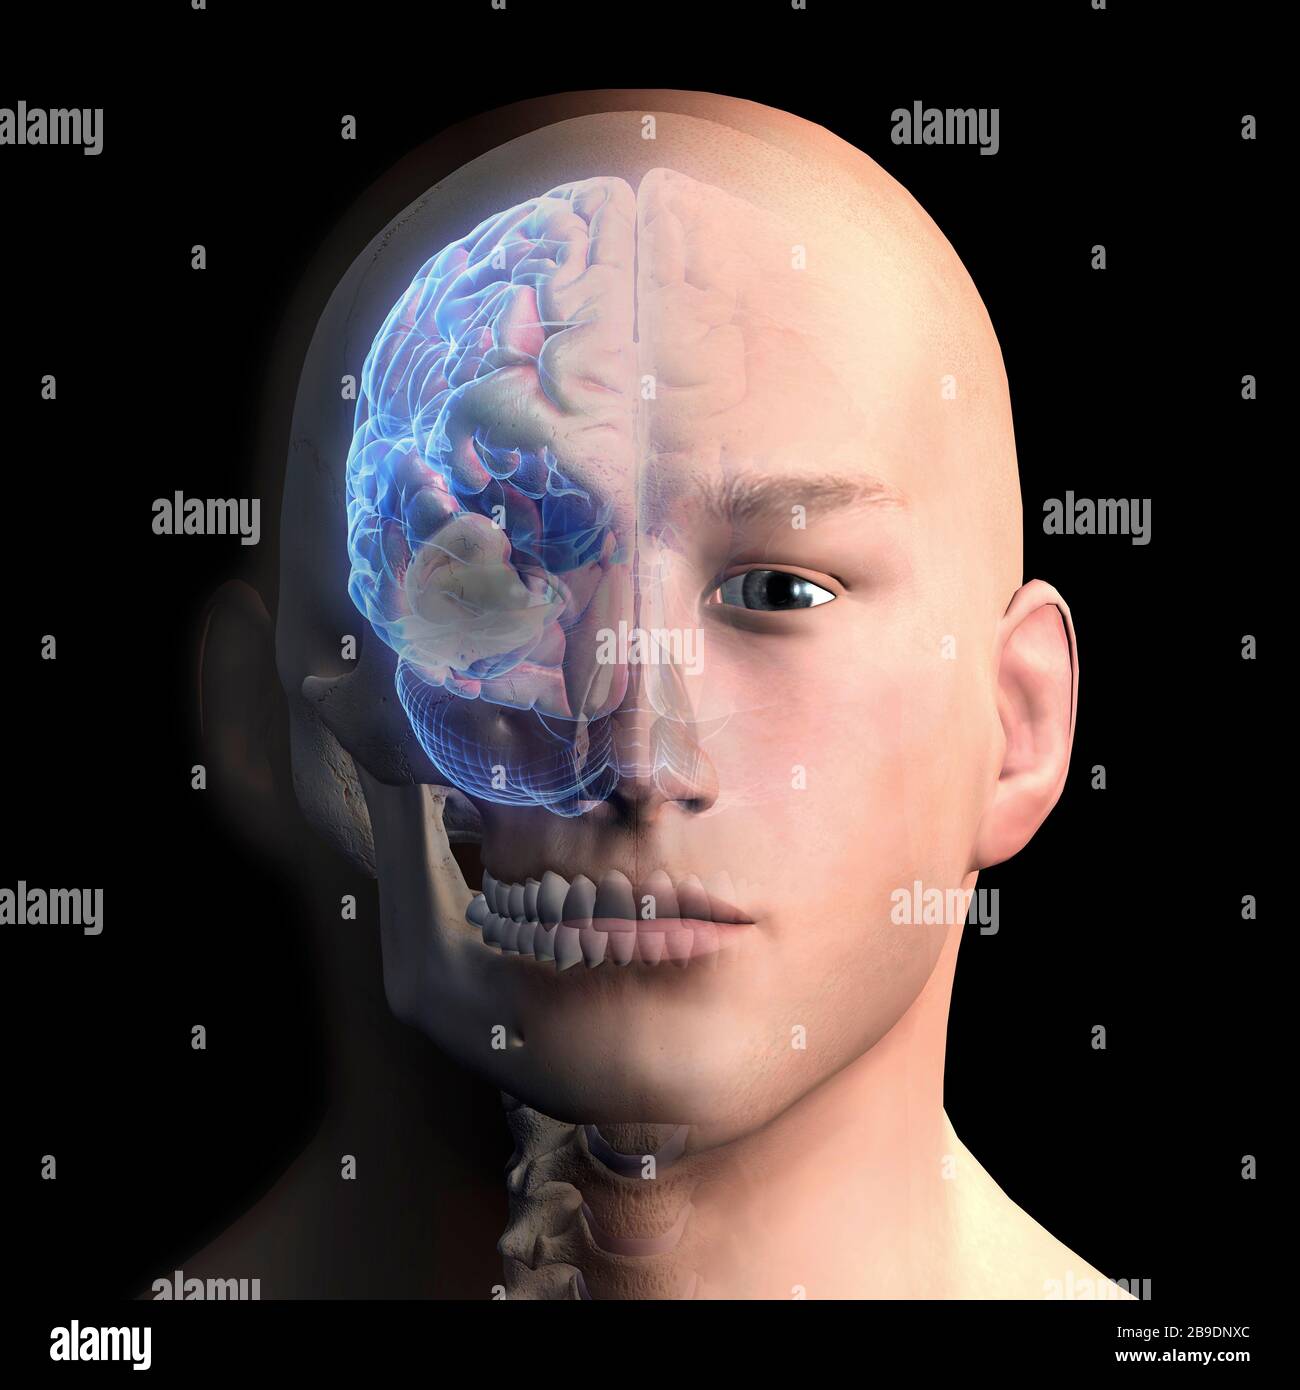 Representación 3D de la cabeza y el cerebro humanos sobre fondo negro. Foto de stock